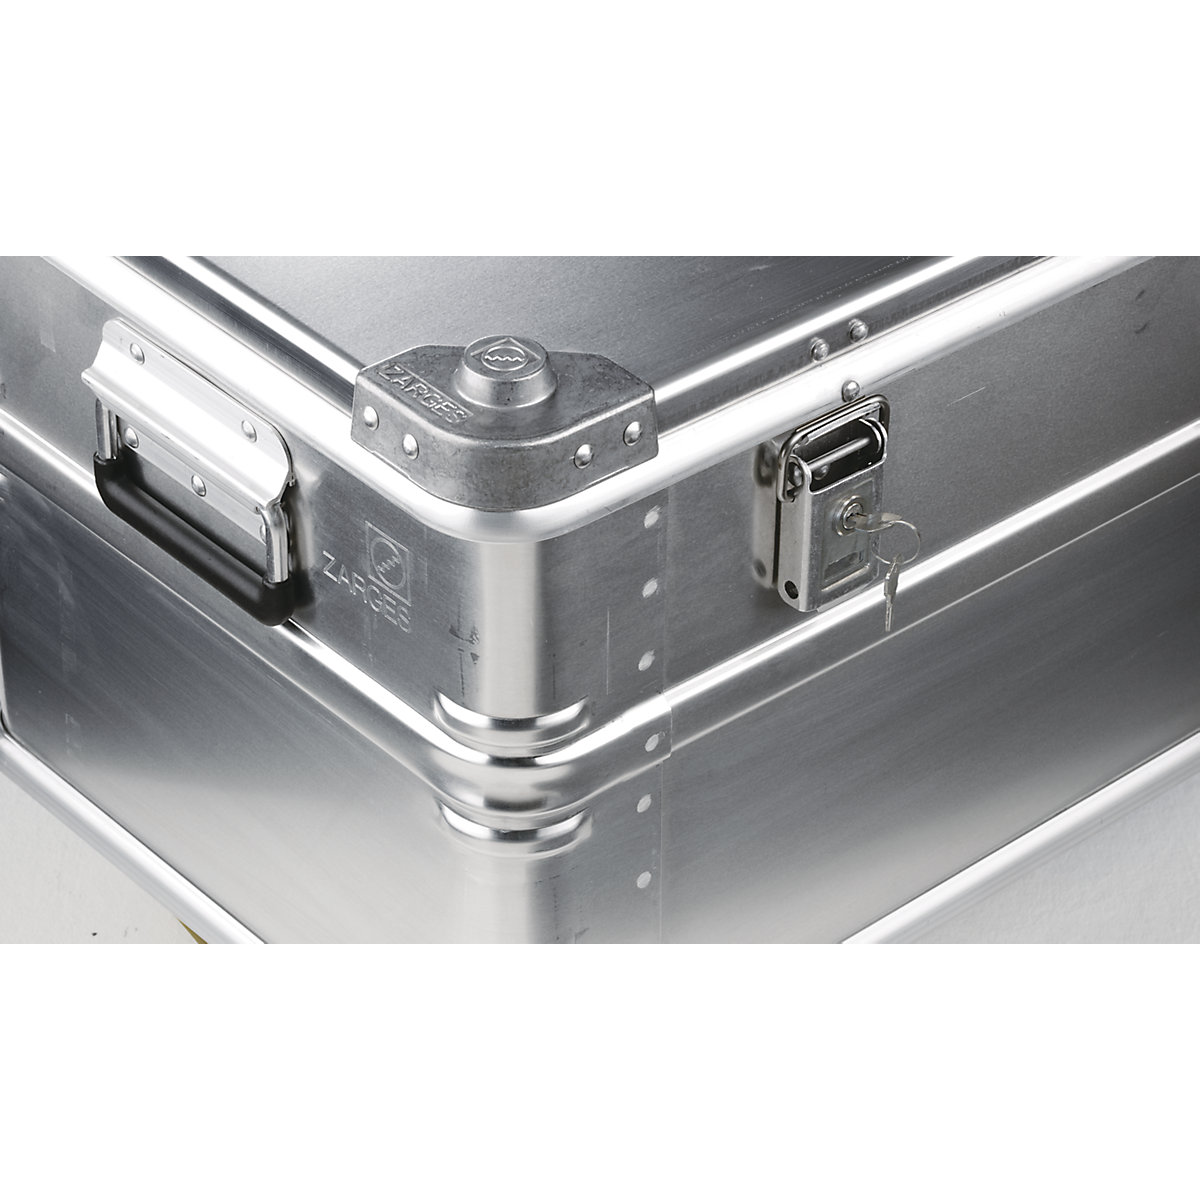 Caisse de transport en aluminium – ZARGES (Illustration du produit 3)-2